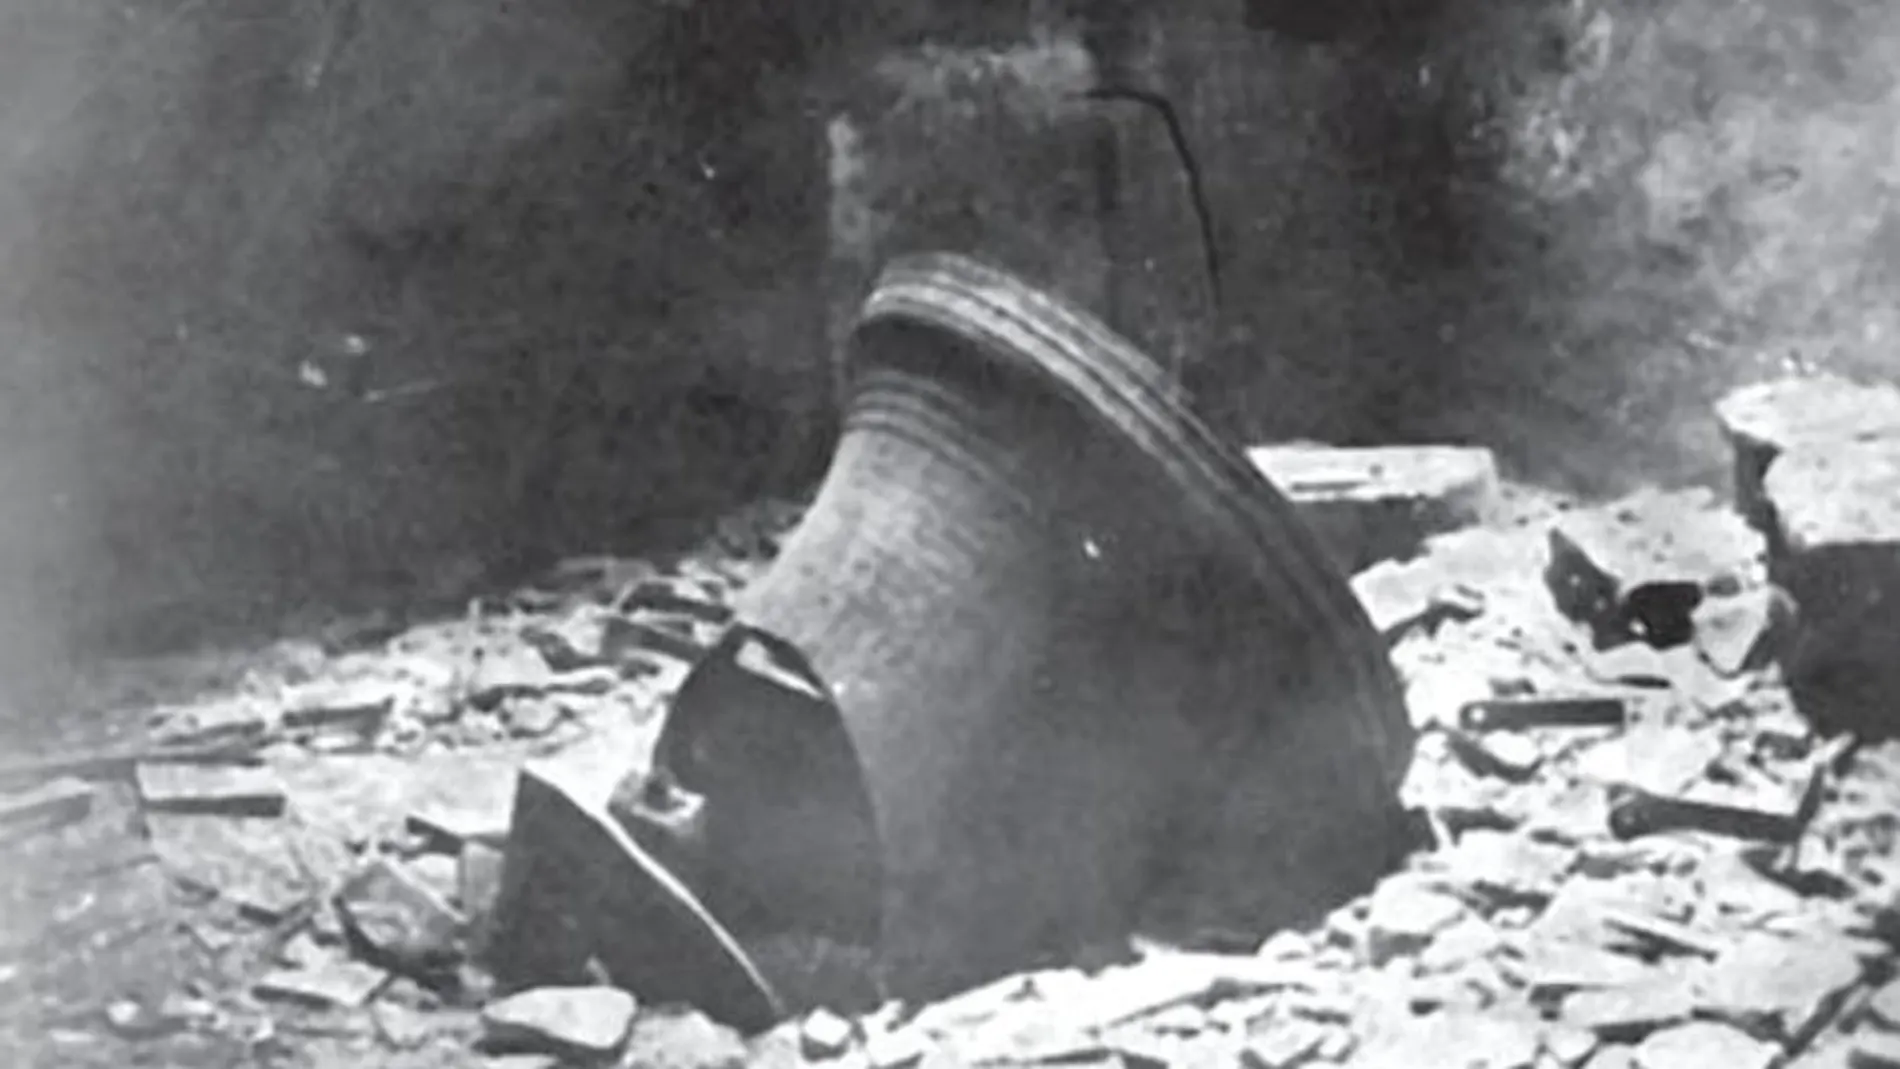 Campana de la Iglesia de San Vicente en Mollet del Vallés, derribada durante la Guerra Civil